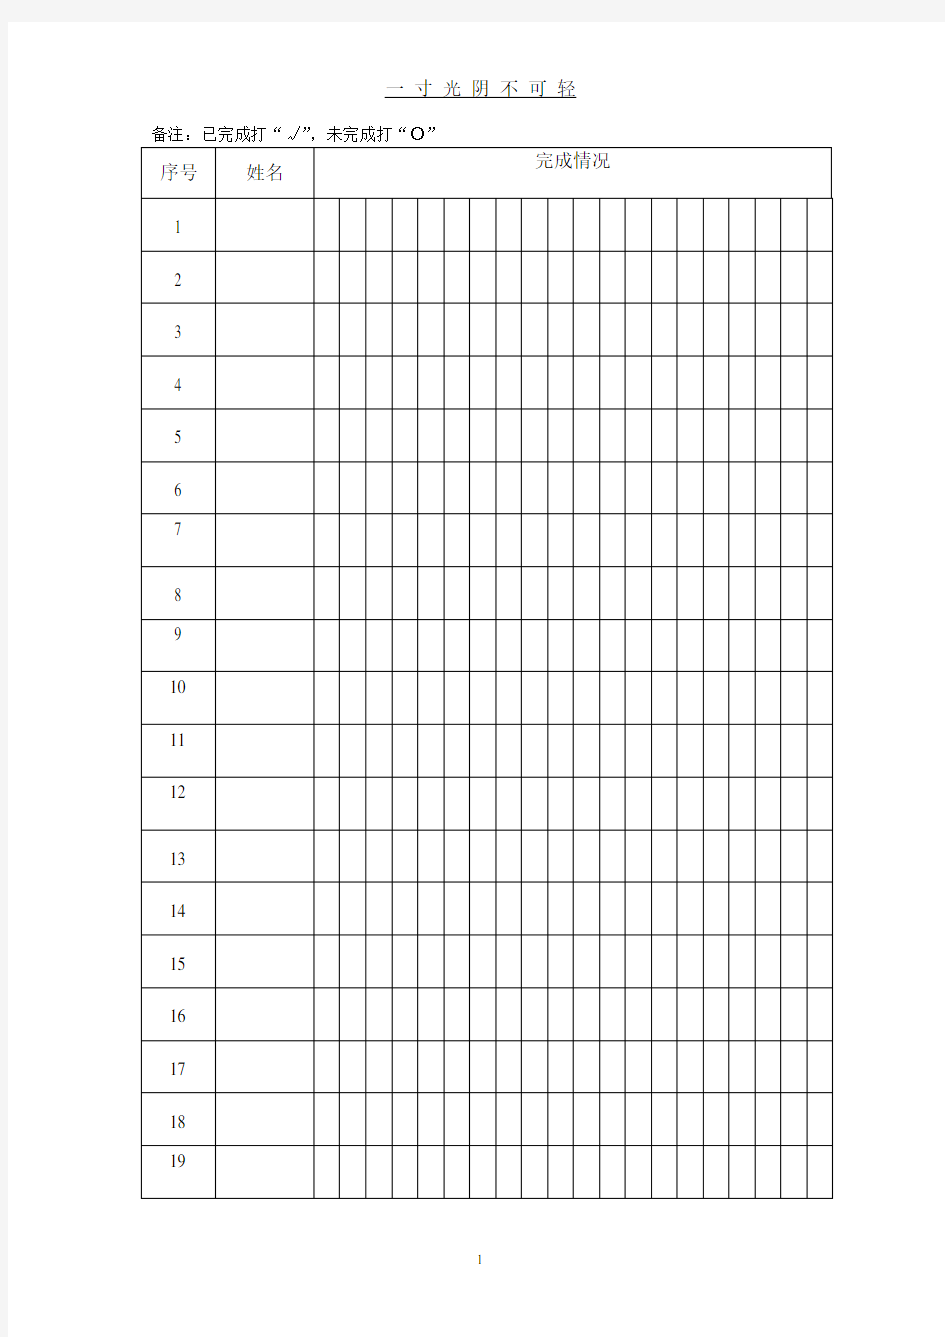 学生作业登记表.pdf